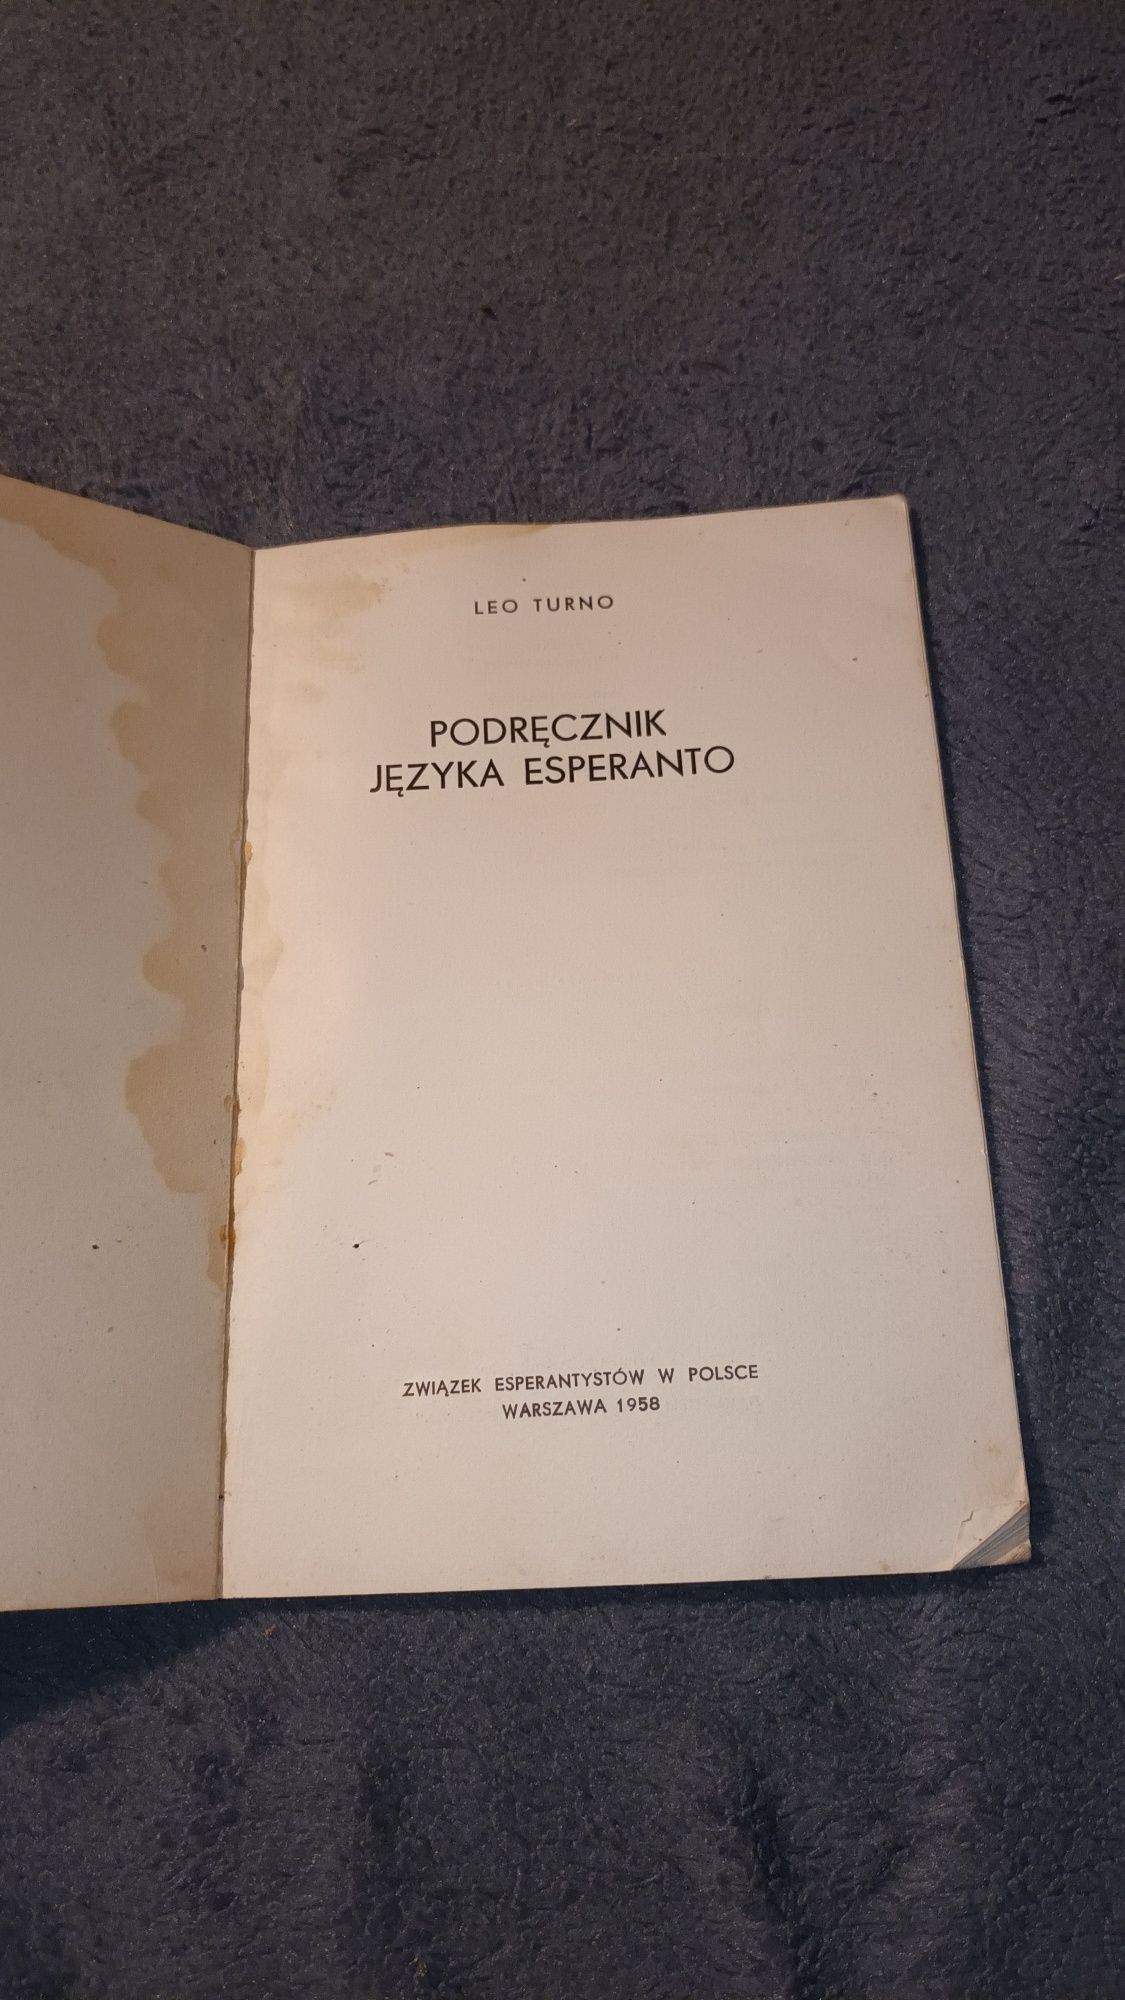 Podręcznik języka esperanto Leo Turno